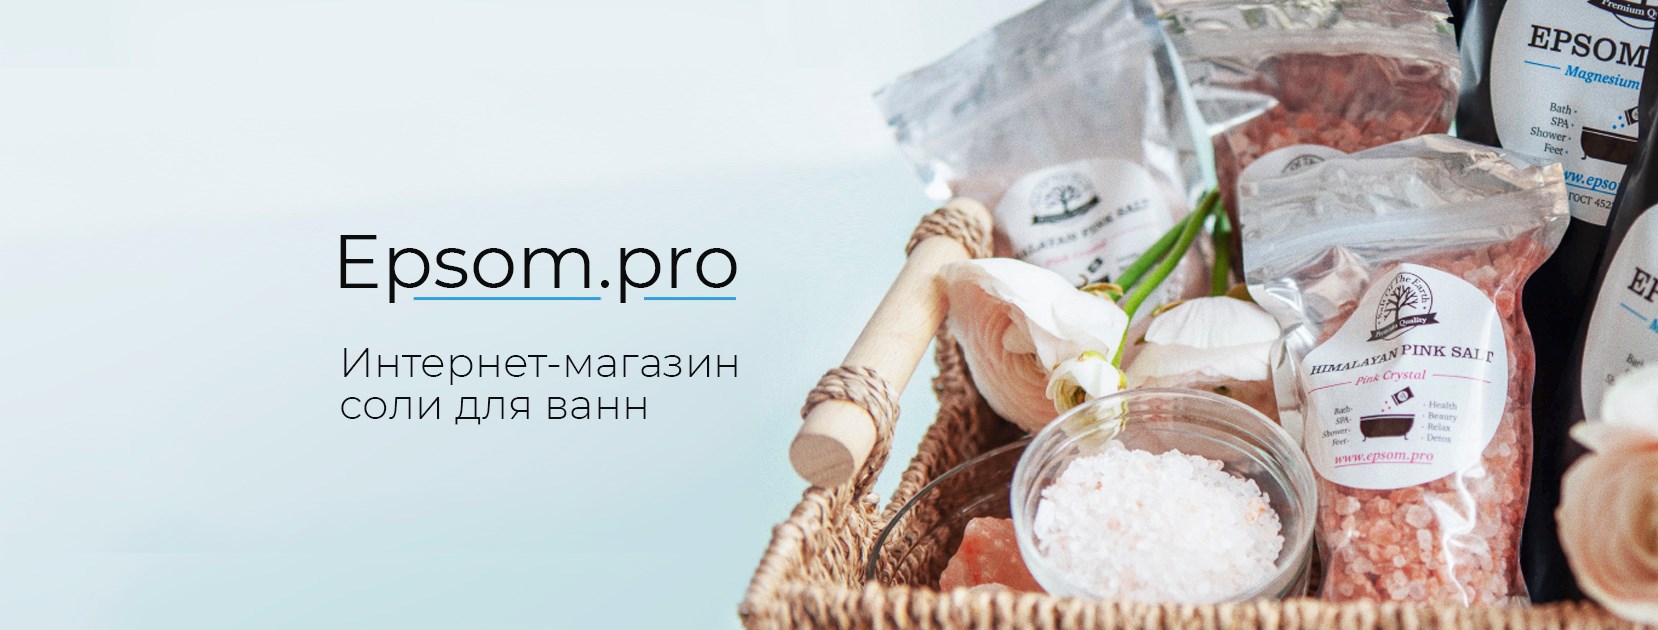 Микс для ванной в подарок при покупке от 1500 рублей.